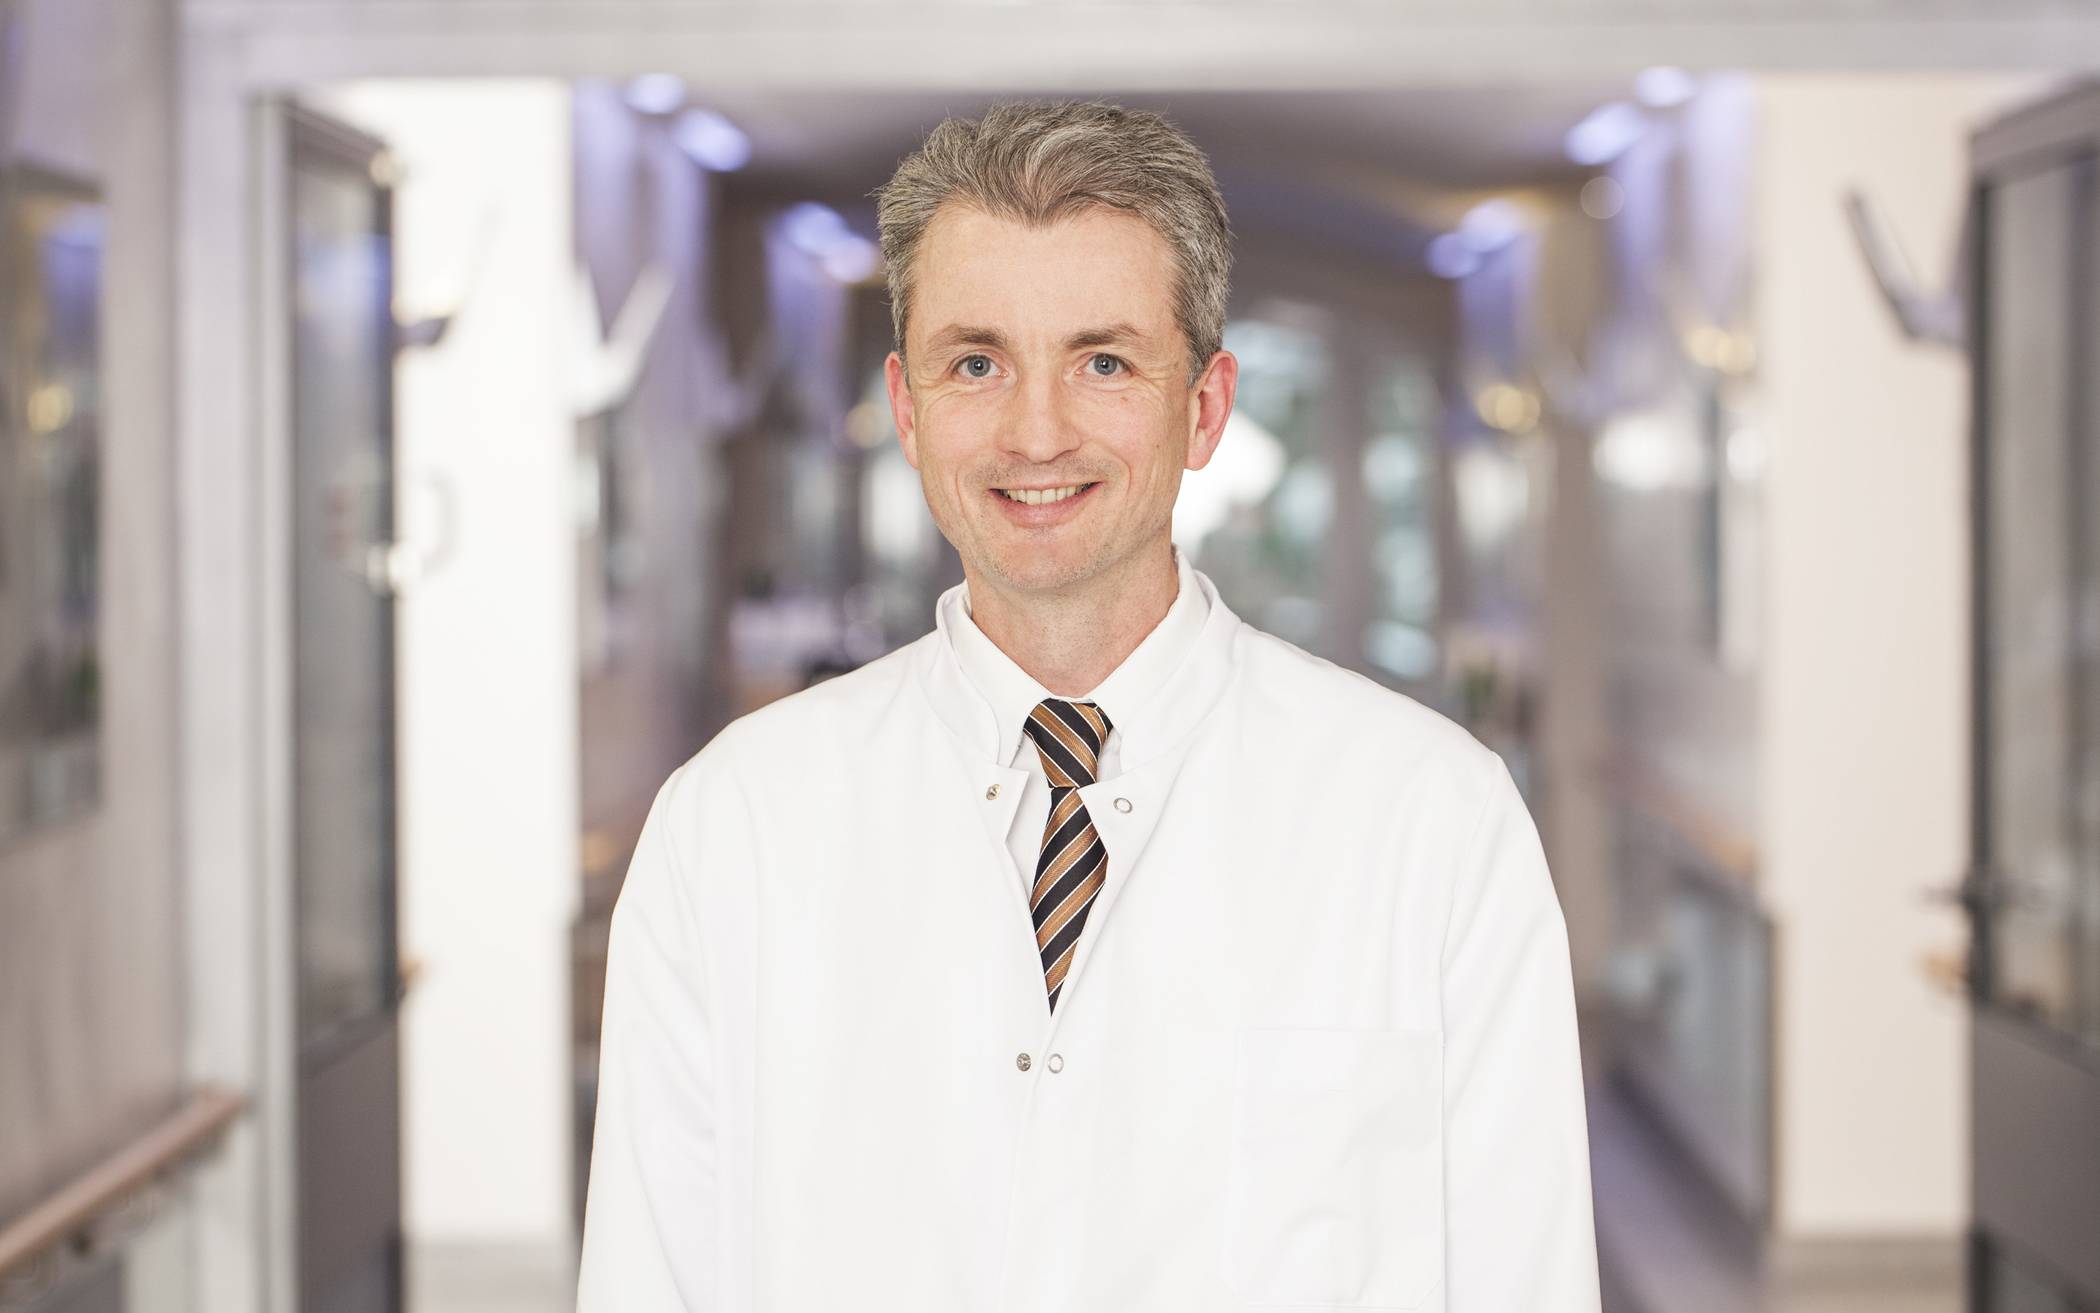  Dr. med. Martin Weiss, Chefarzt der Klinik für Anästhesiologie und Intensivmedizin. 